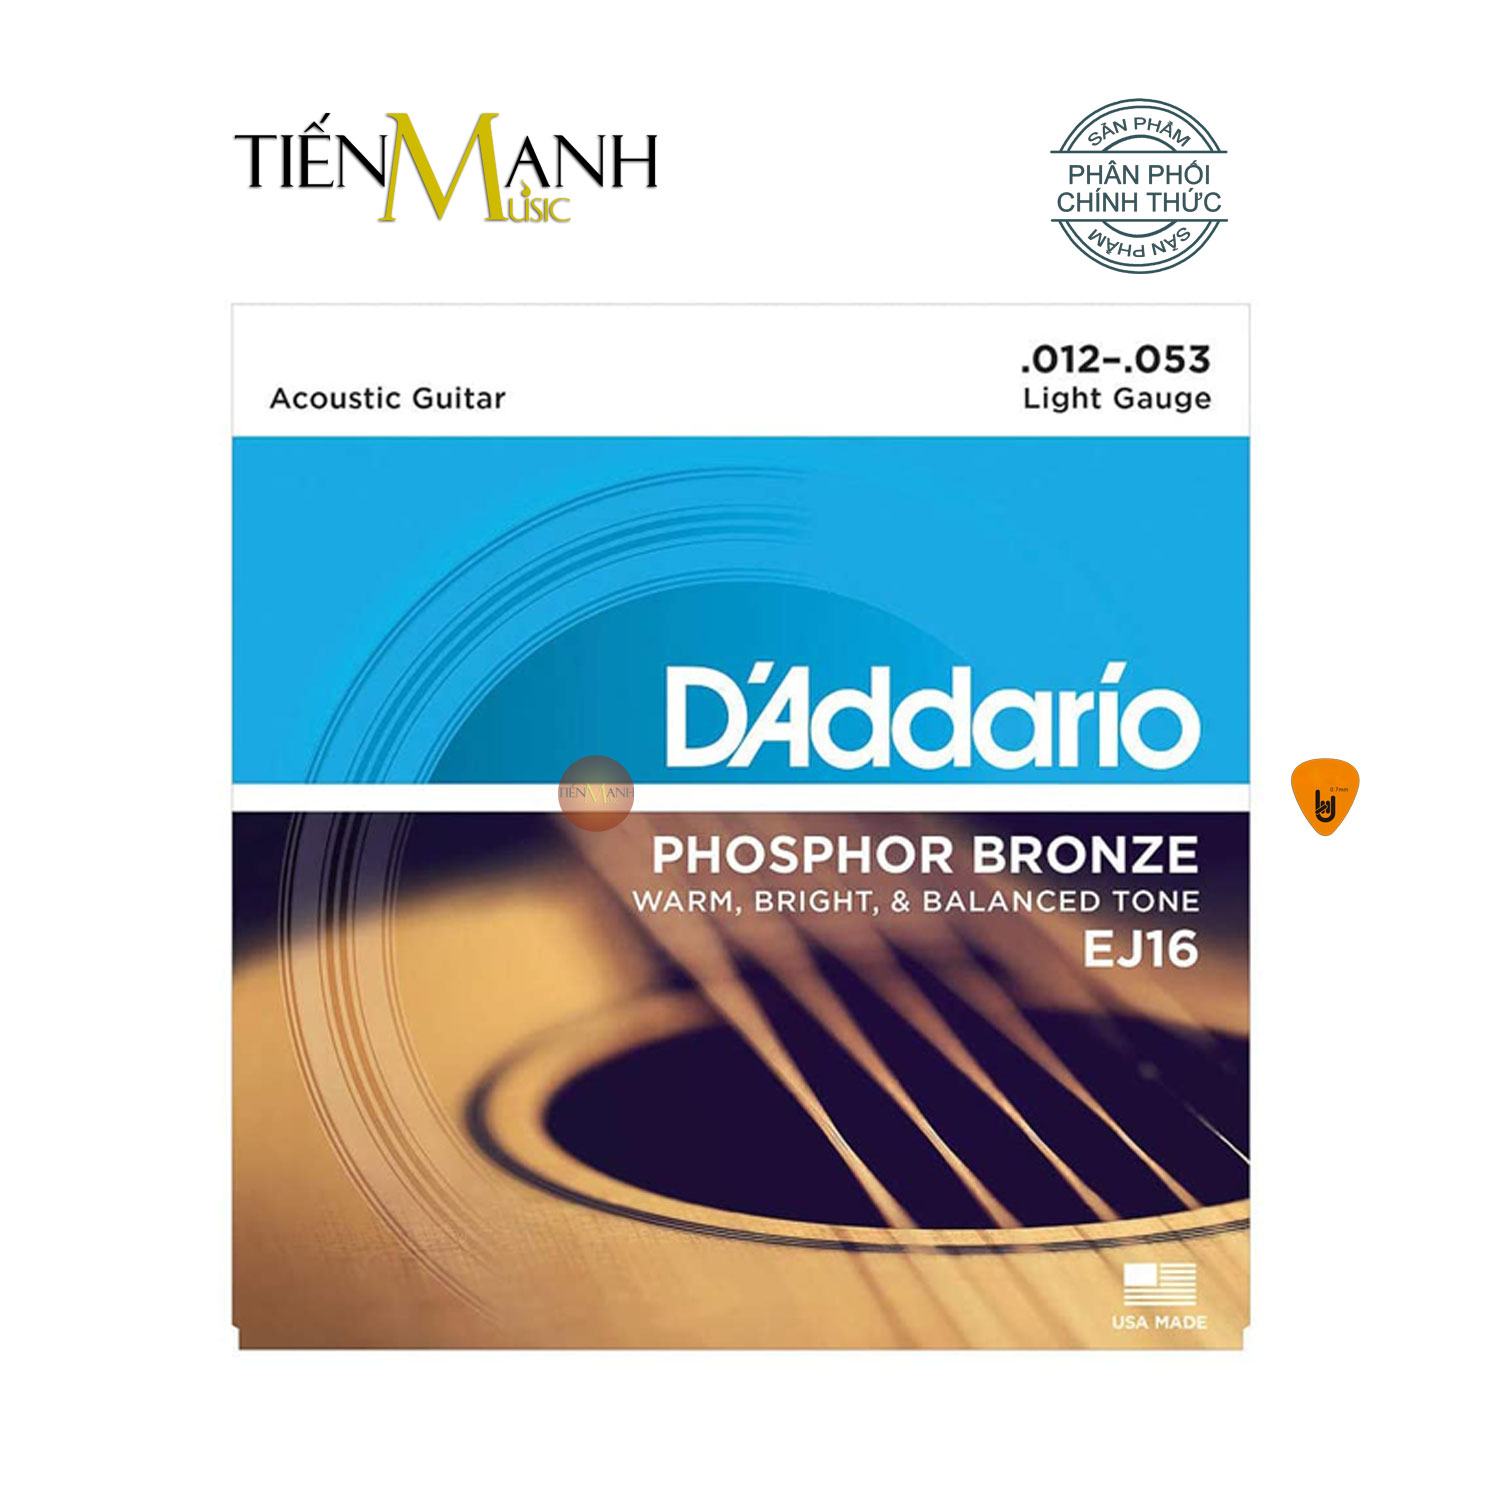 D'Addario EJ16 Bộ Dây Đàn Guitar Acoustic Phosphor Bronze Strings Cỡ 12 (.012-.053) DAddario Hàng Chính Hãng - Kèm Móng Gẩy DreamMaker